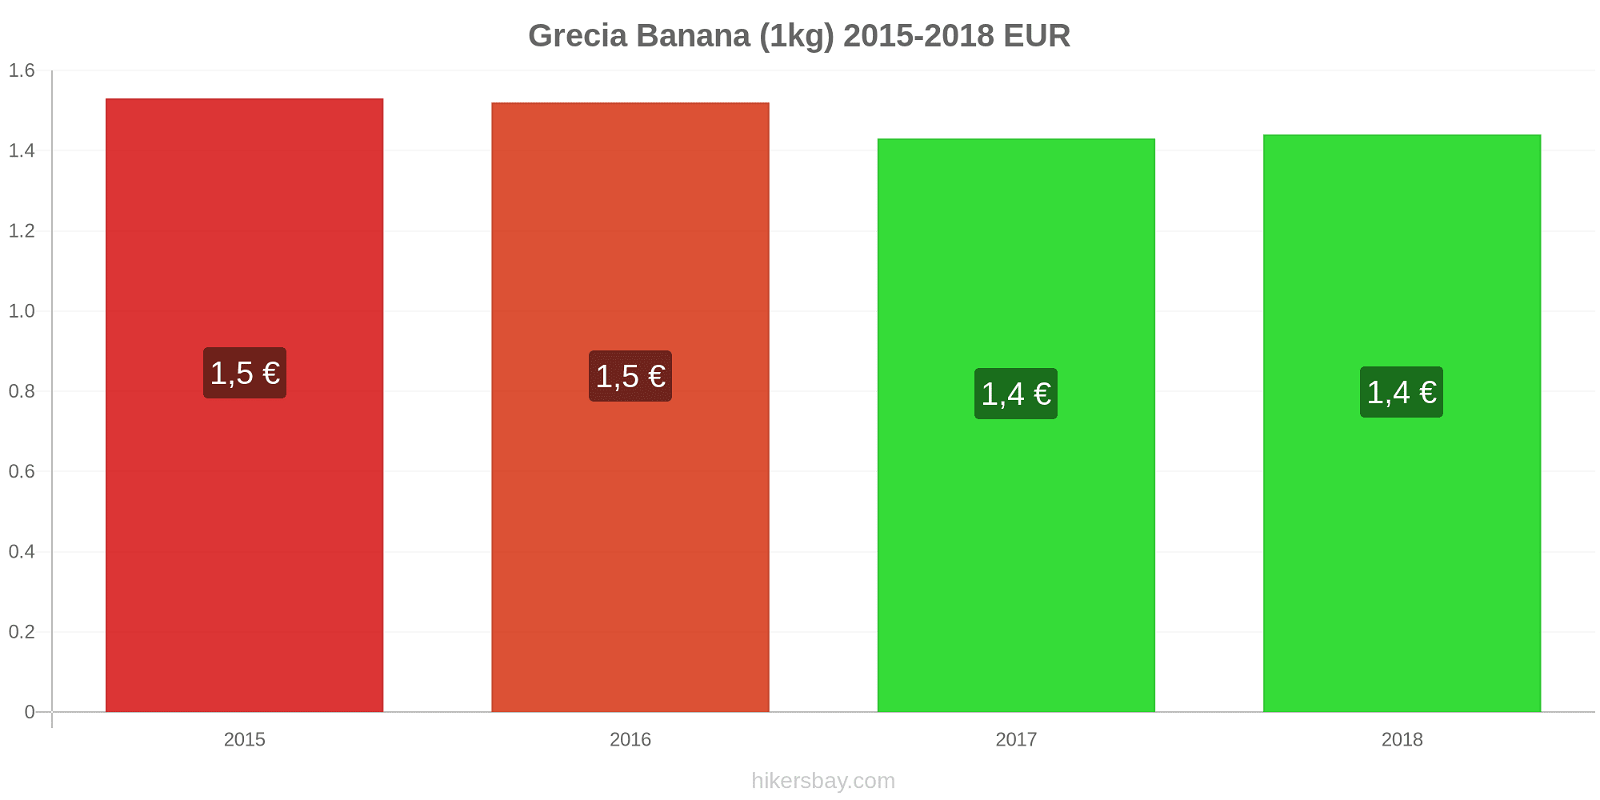 Grecia cambi di prezzo Banane (1kg) hikersbay.com